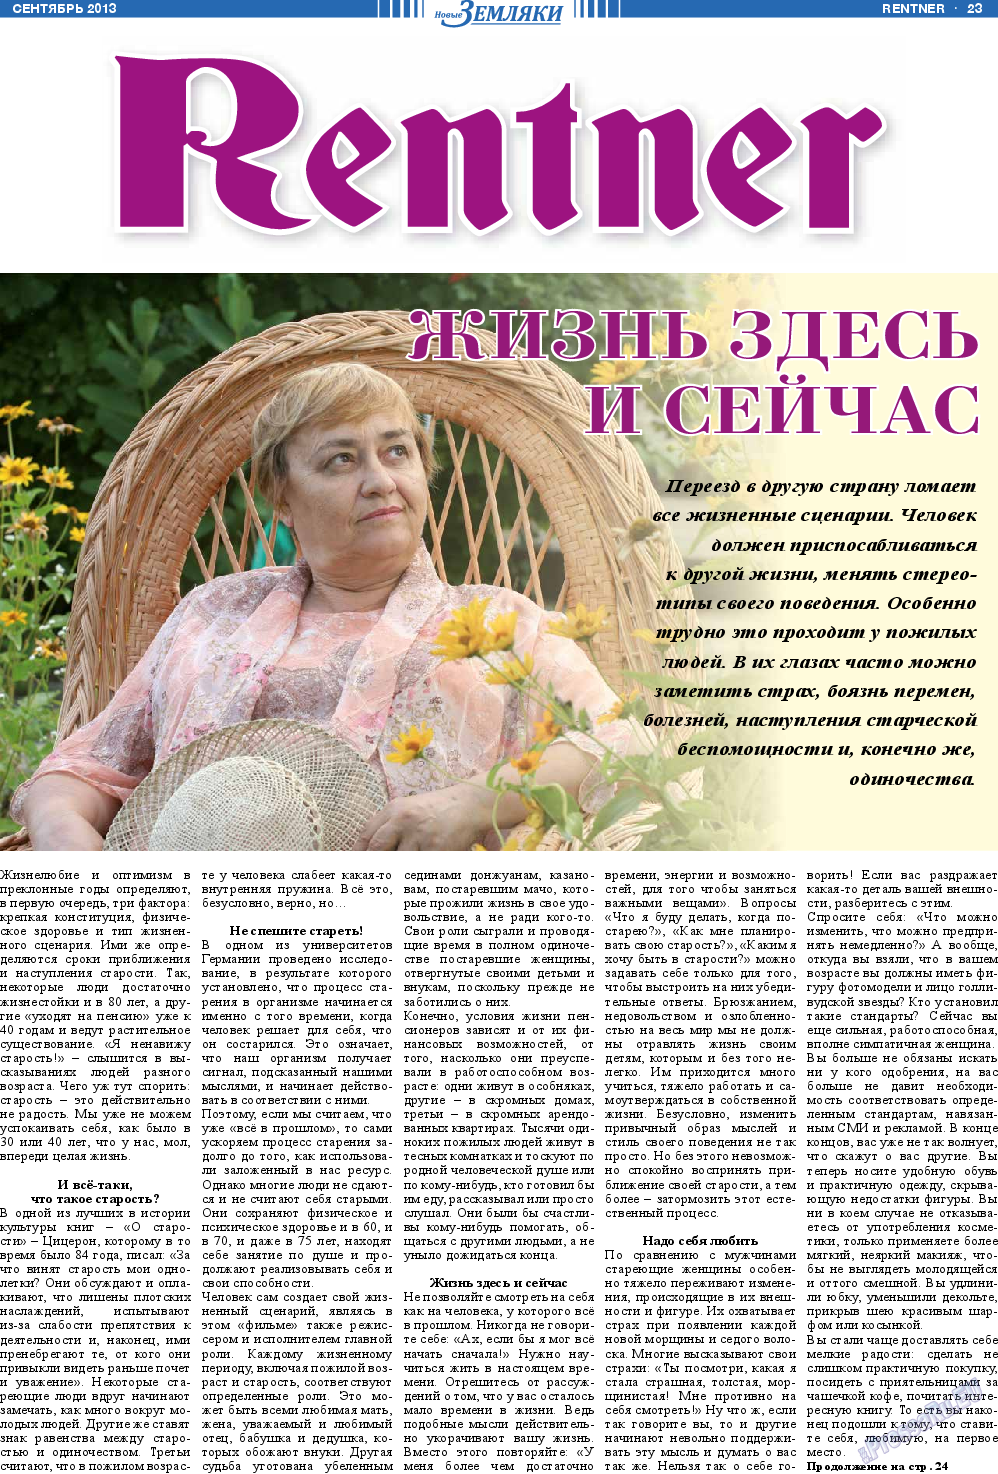 Новые Земляки, газета. 2013 №9 стр.23